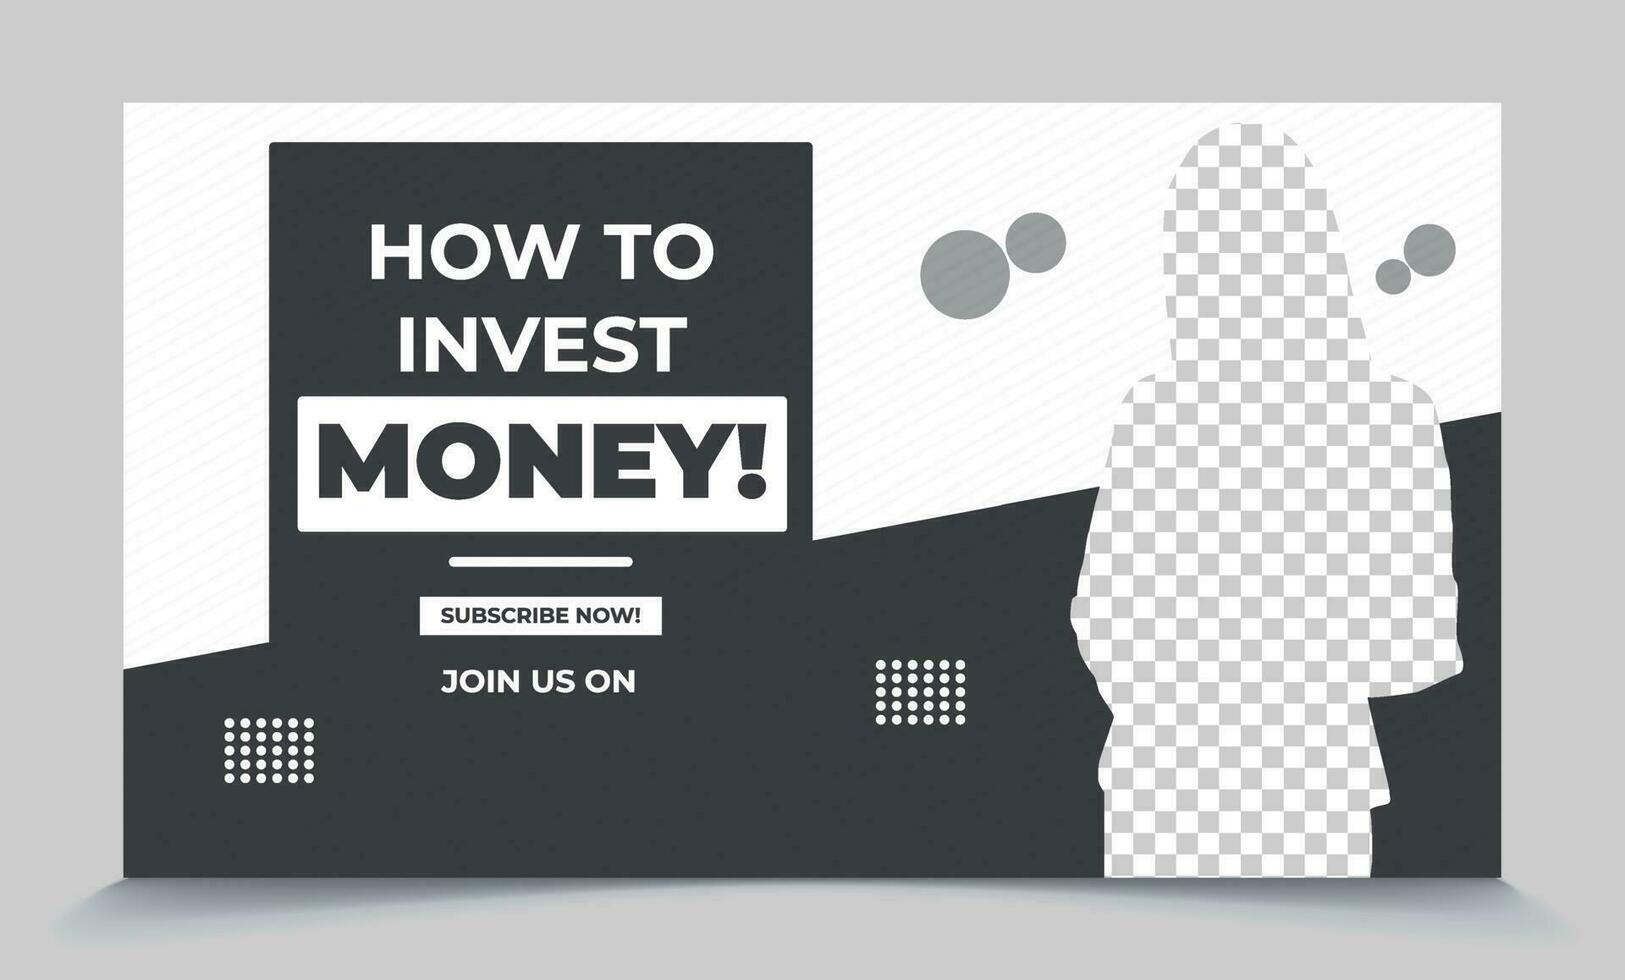 hoe naar investeren geld in promotionele video miniatuur post-klaar het dossier vector eps